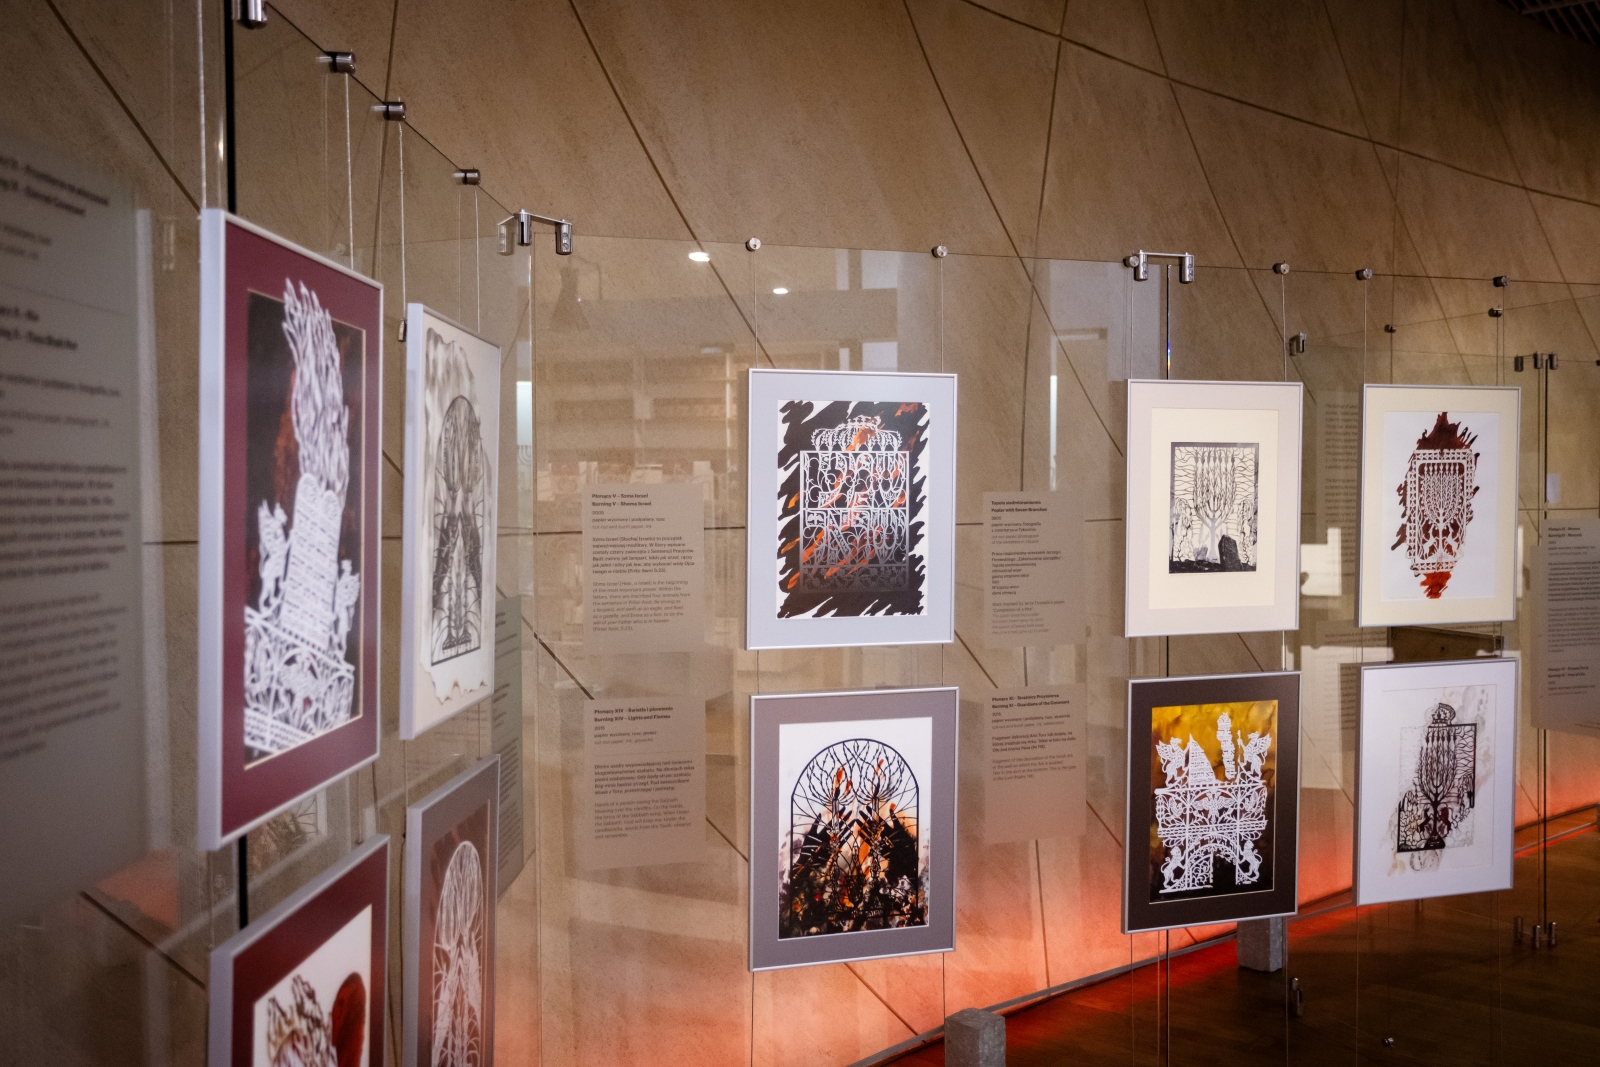 Na szklanych ściankach wiszą prace Moniki Krajewskiej prezentowane na wystawie "Płonące".